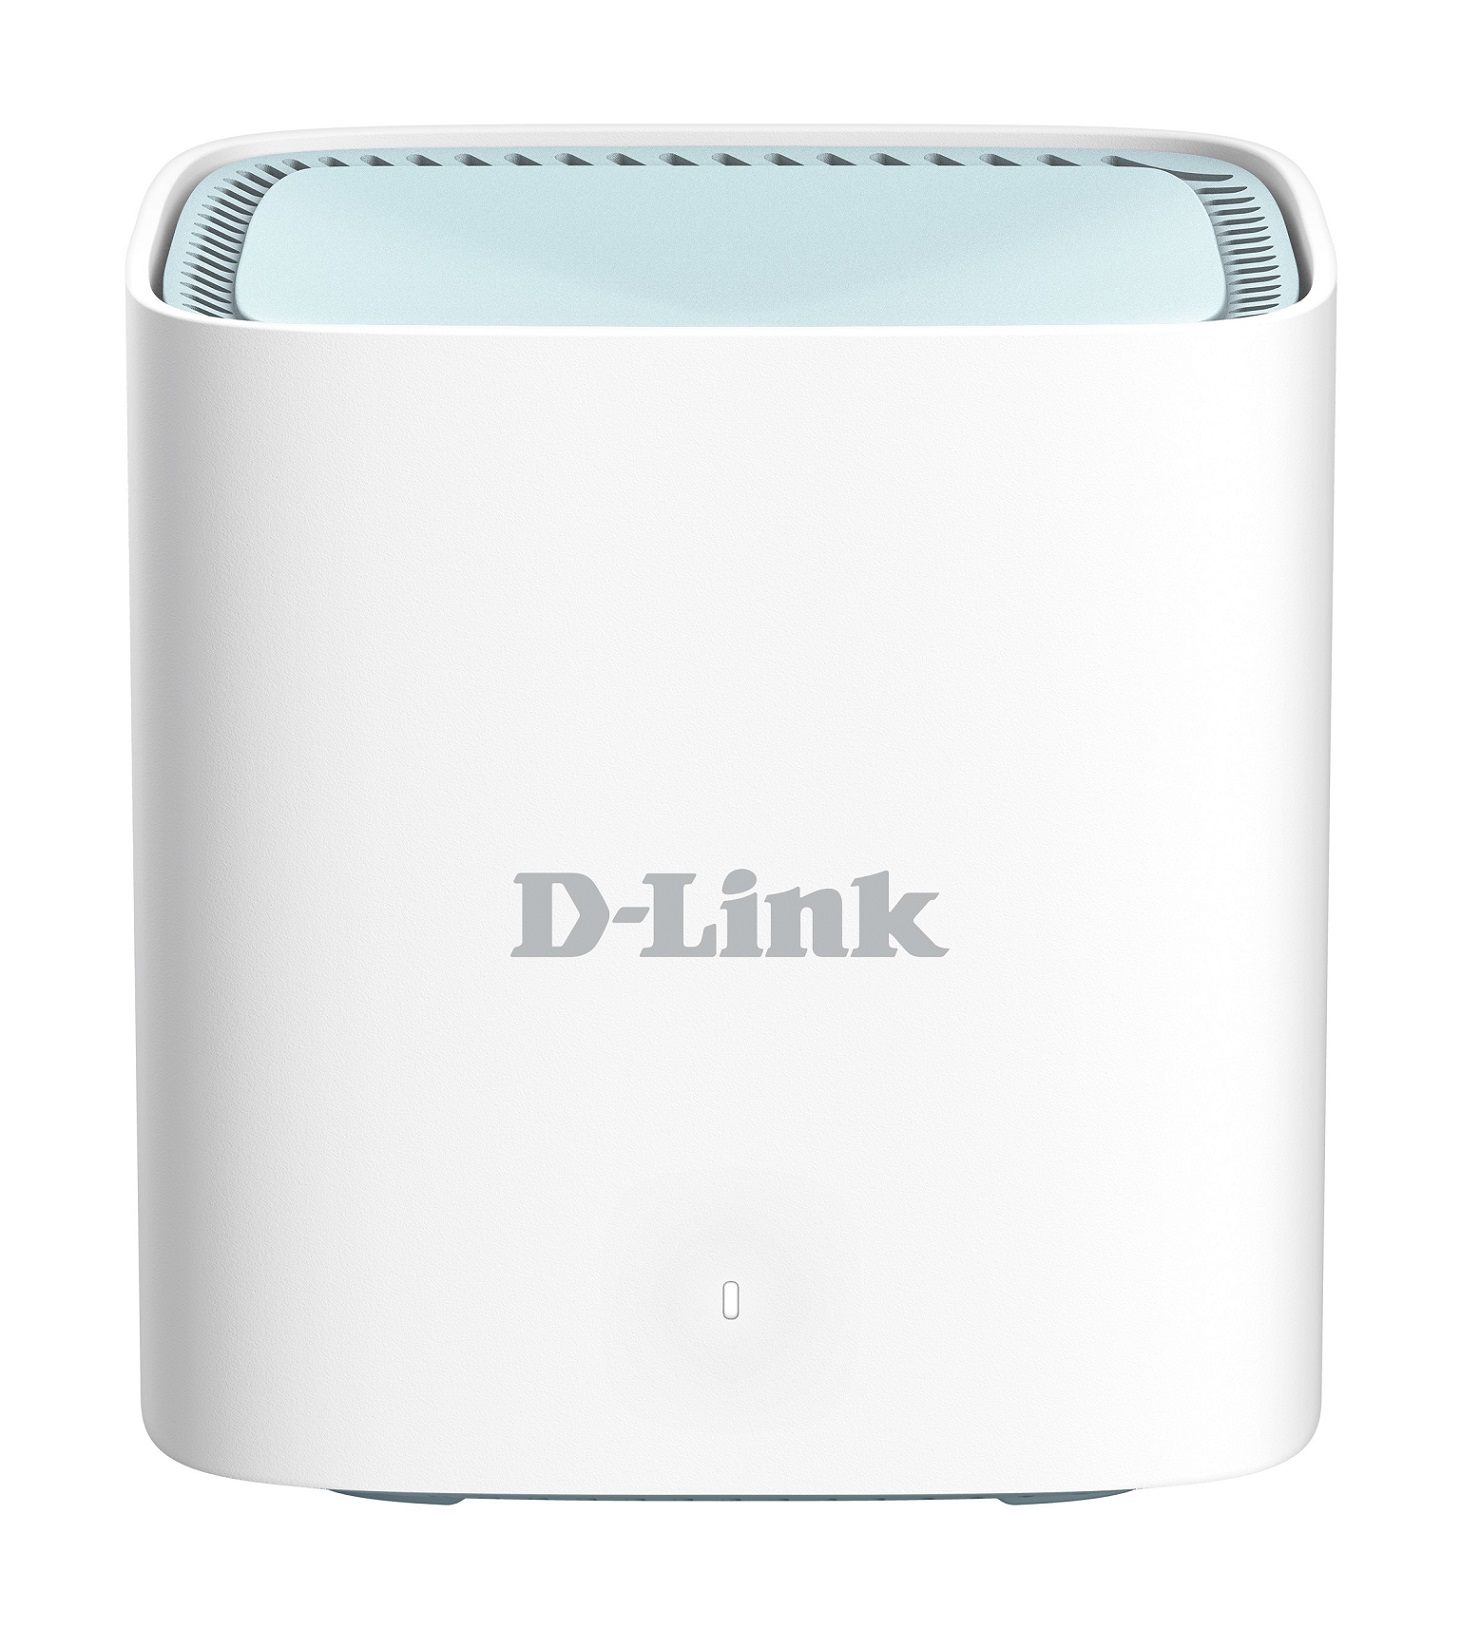 D-Link DWP-1010/ KT - 5G/ LTE Outdoor CPE (ODU Unit), 1x 1GbE port + M15 (IDU Unit) 